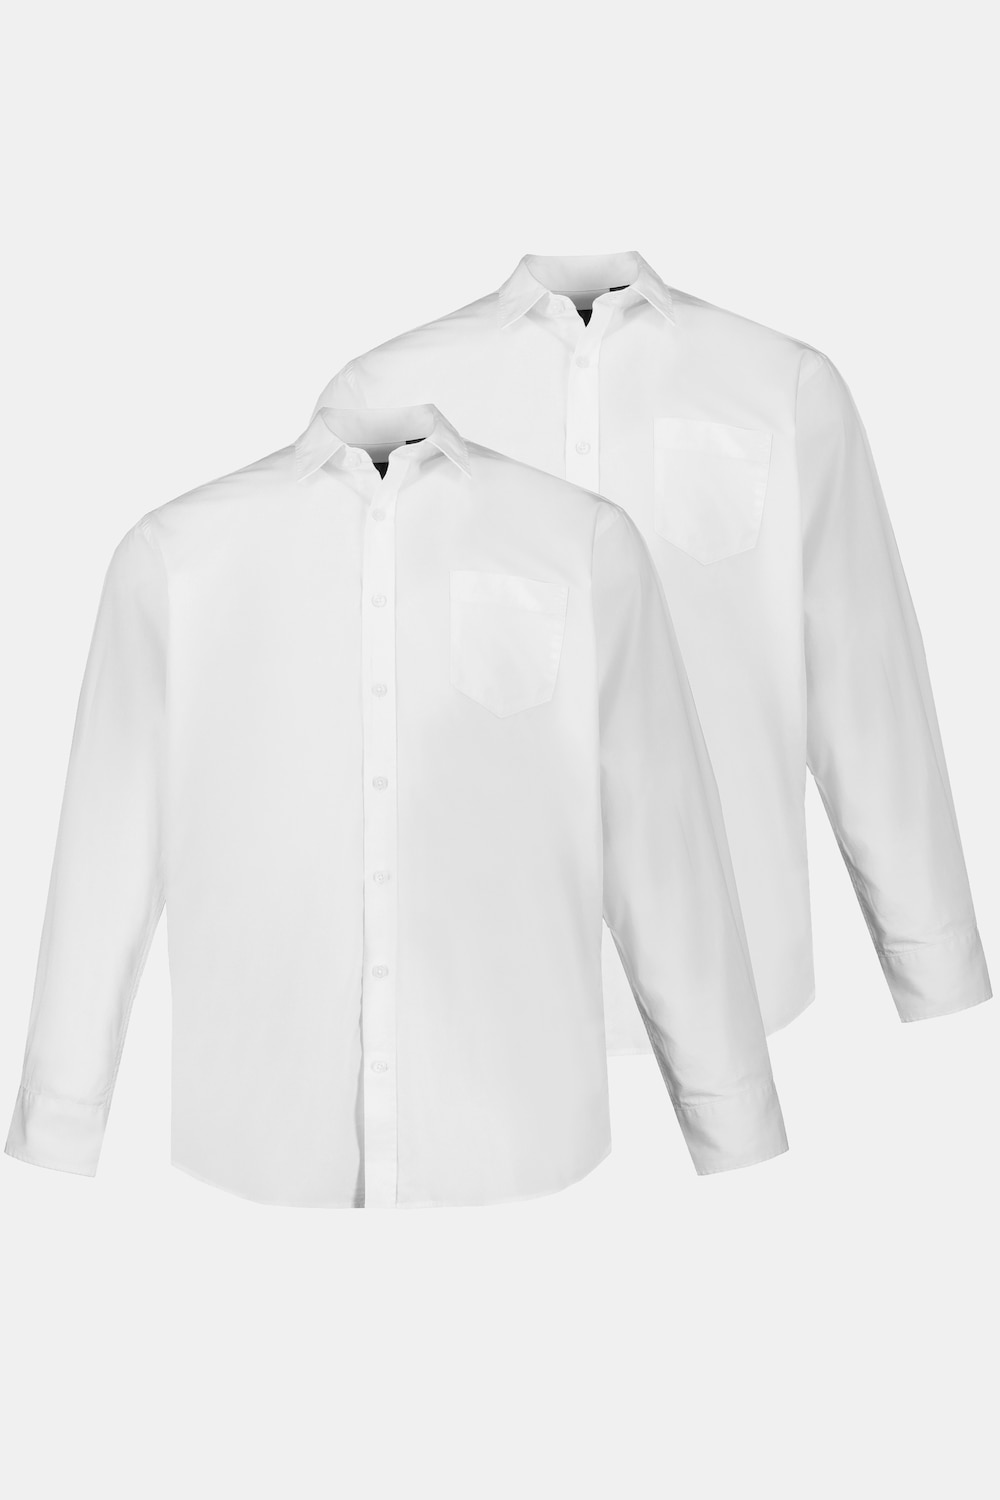 Grote Maten overhemden, Heren, wit, Maat: L, Katoen, JP1880